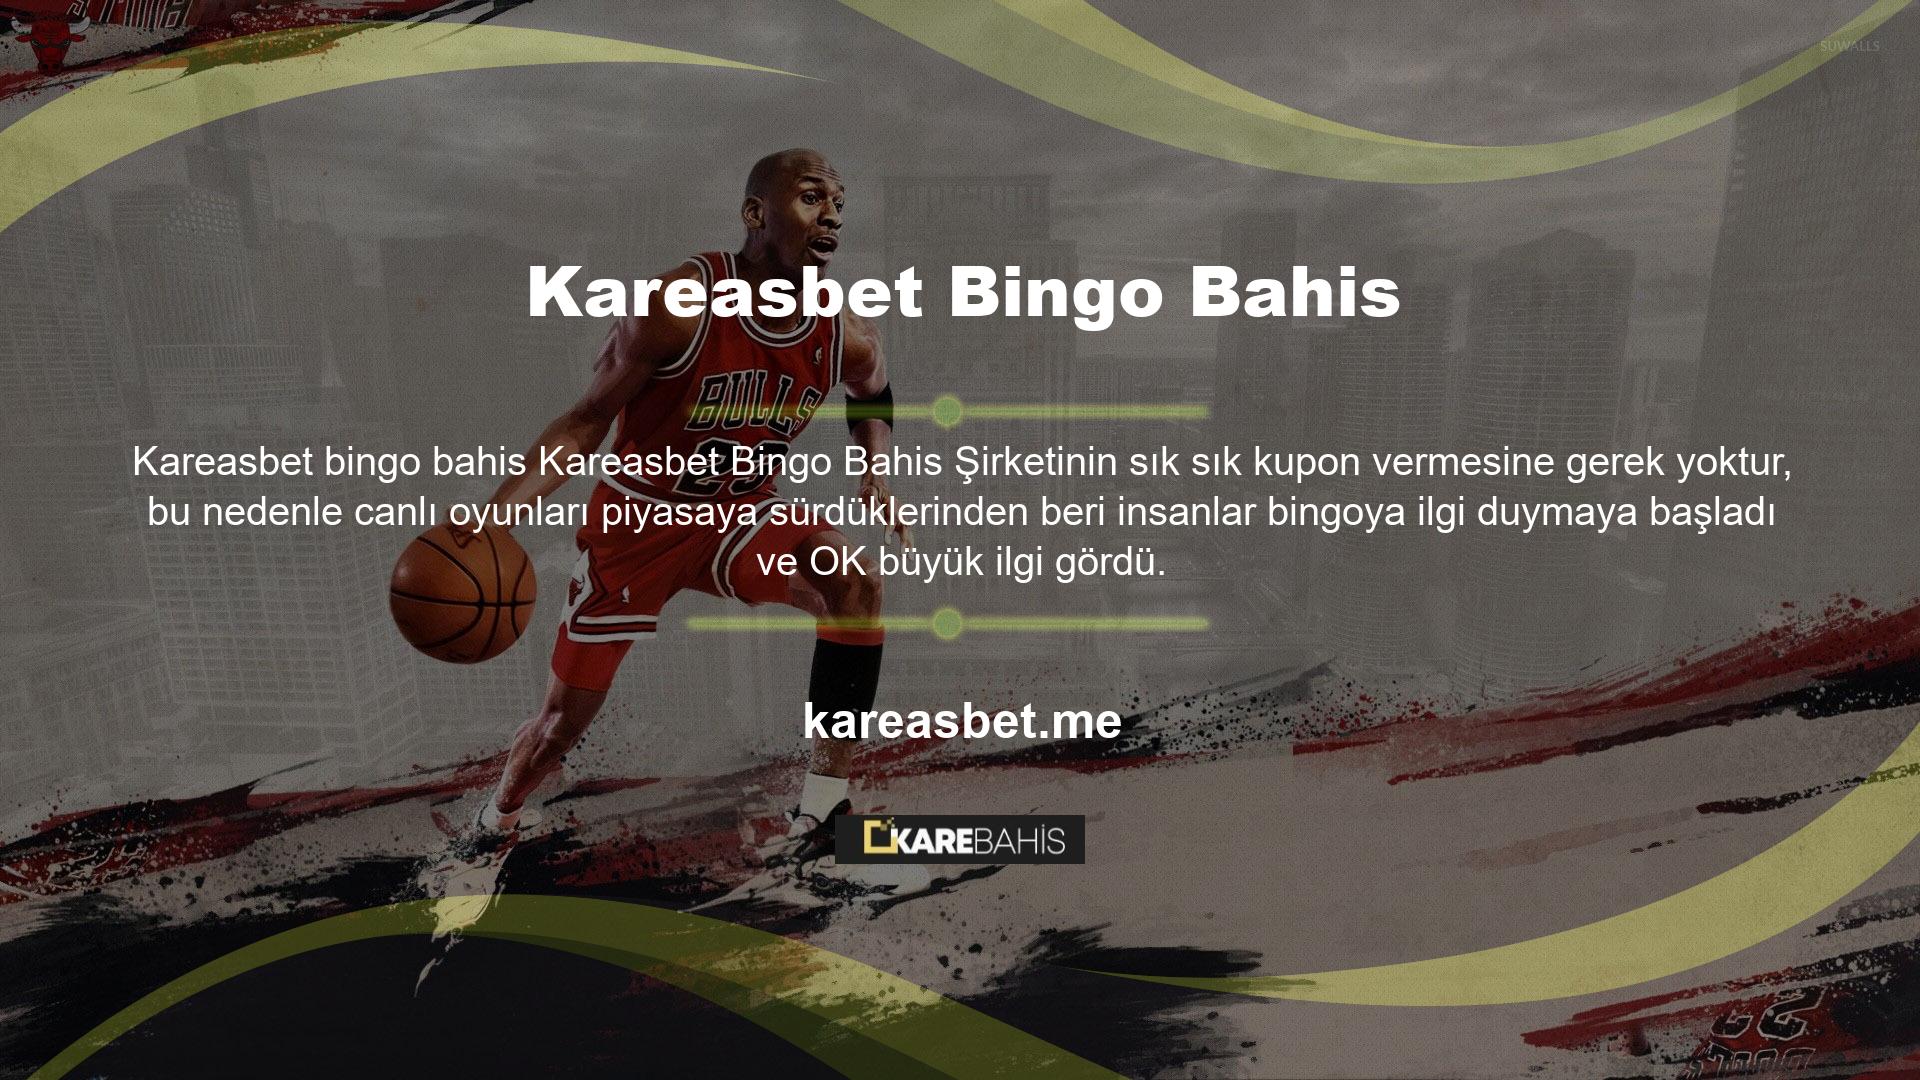 Türkçe oynanabilen (oyun ve kurallar hakkında daha fazla bilgi edinebileceğiniz) oyunun piyasaya sürülmesi, sitede canlı oyun çıtasını yükseltiyor